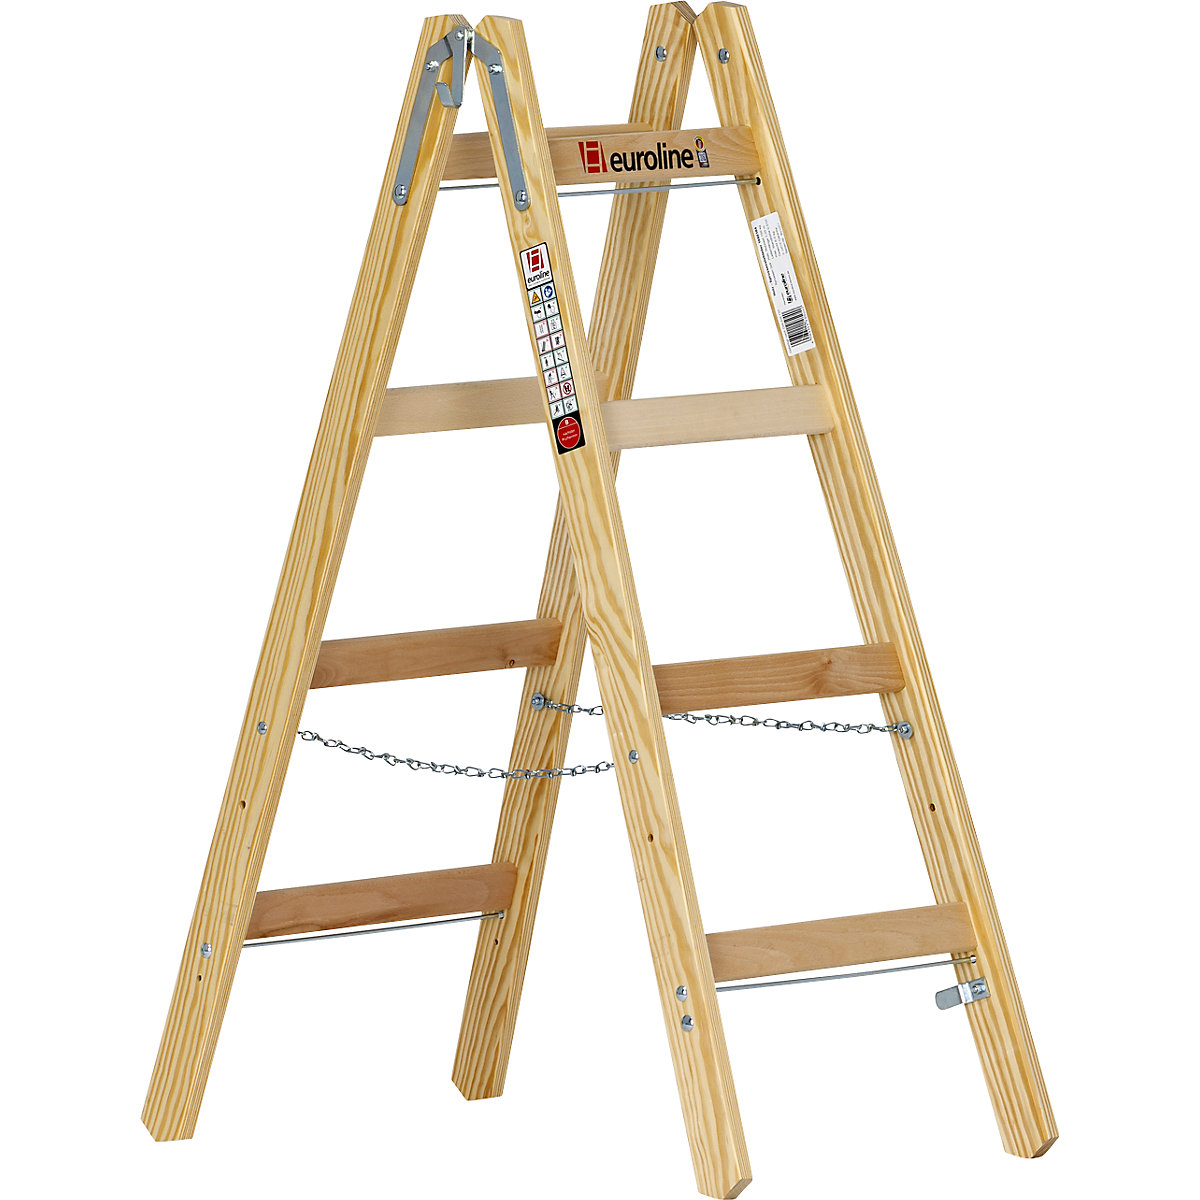 Drevený stojaci rebrík s priečkami – euroline